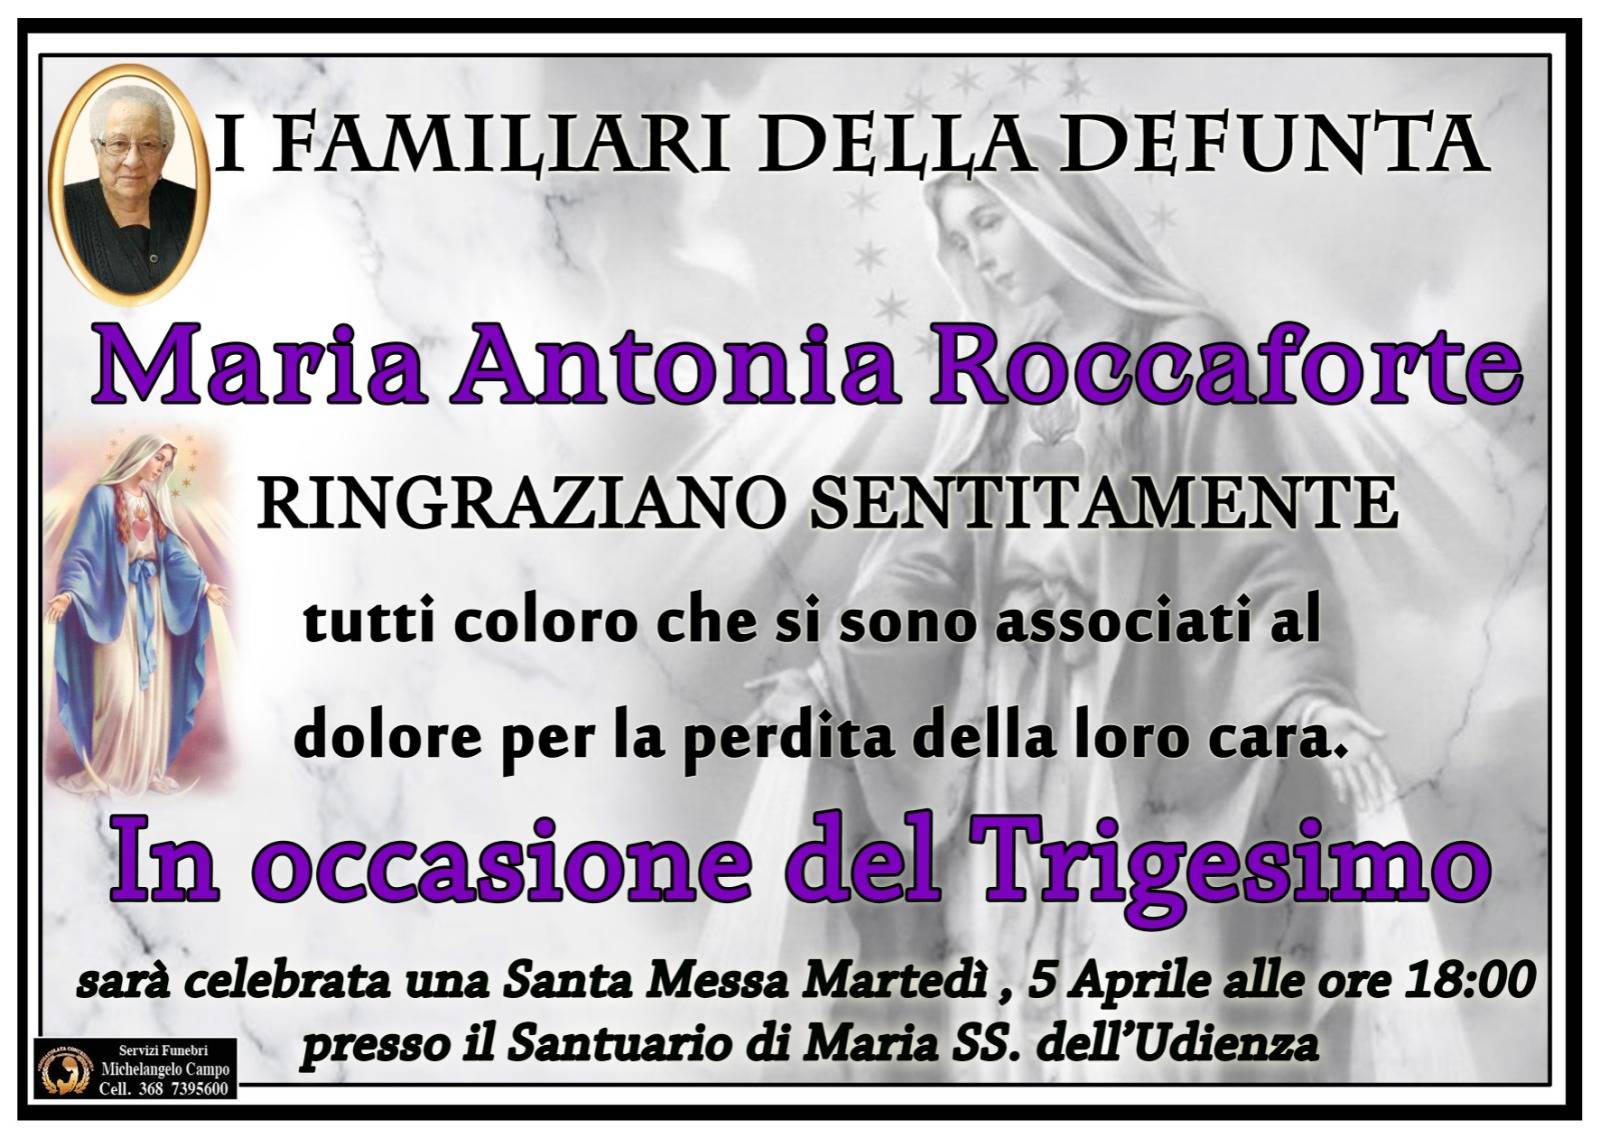 Maria Antonia Roccaforte